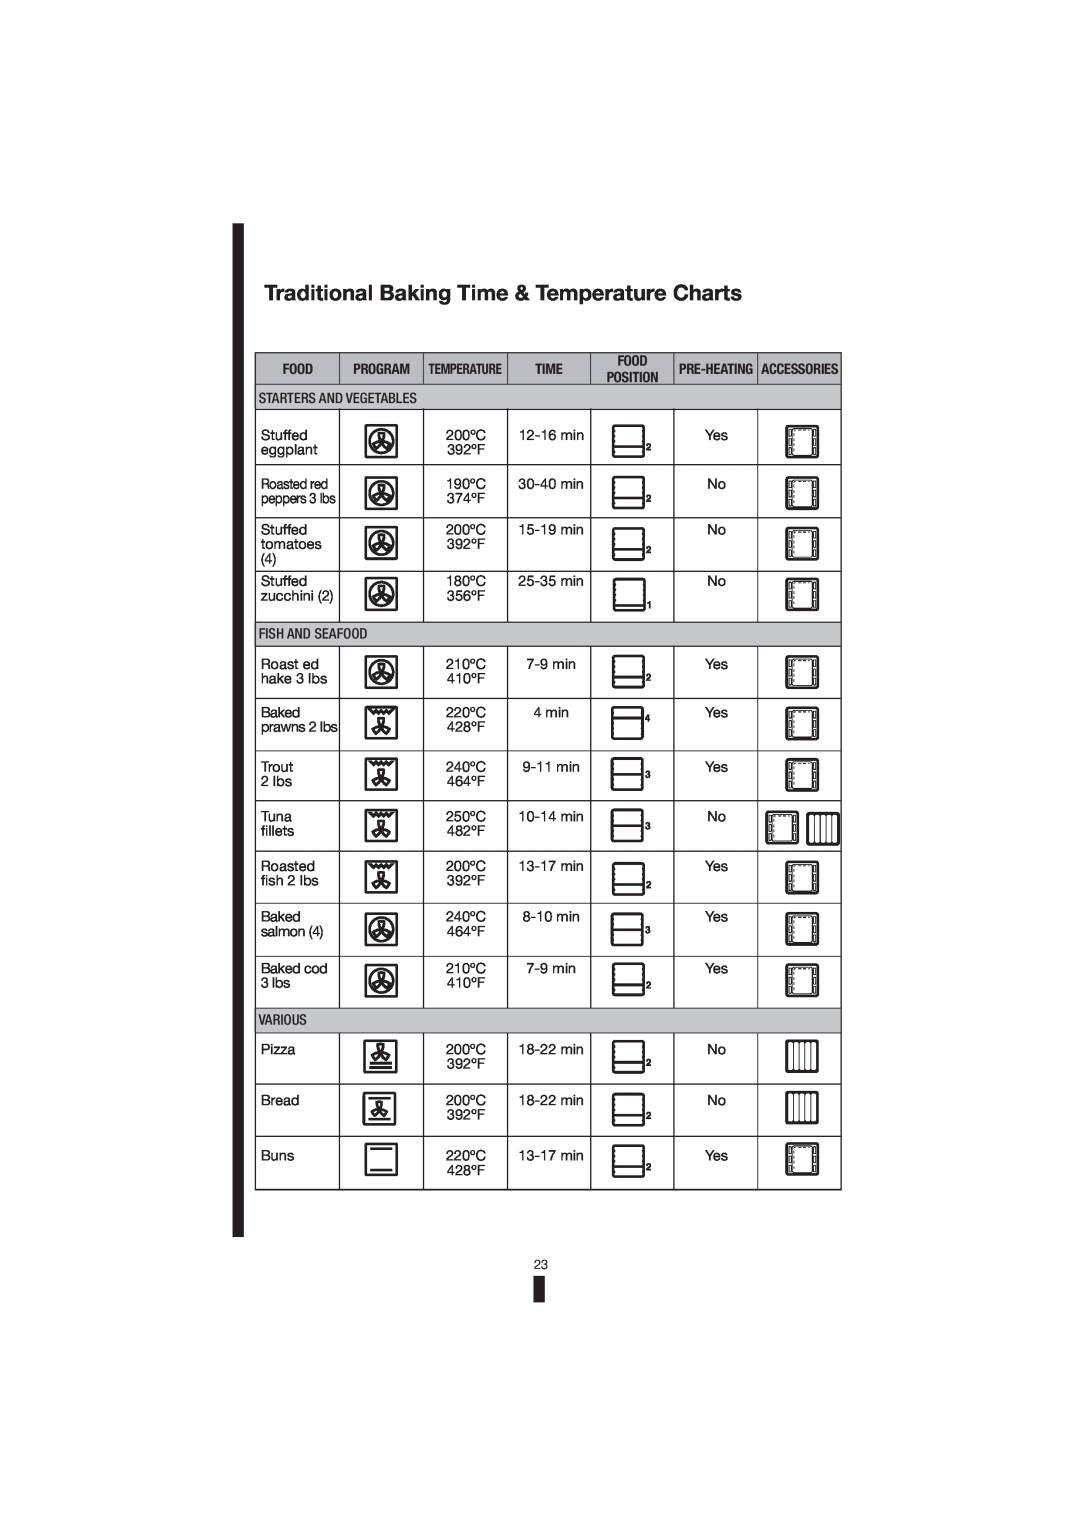 Fagor America 5HA-200 RX, 5HA-200 LX, 5HA-196 X manual Traditional Baking Time & Temperature Charts 